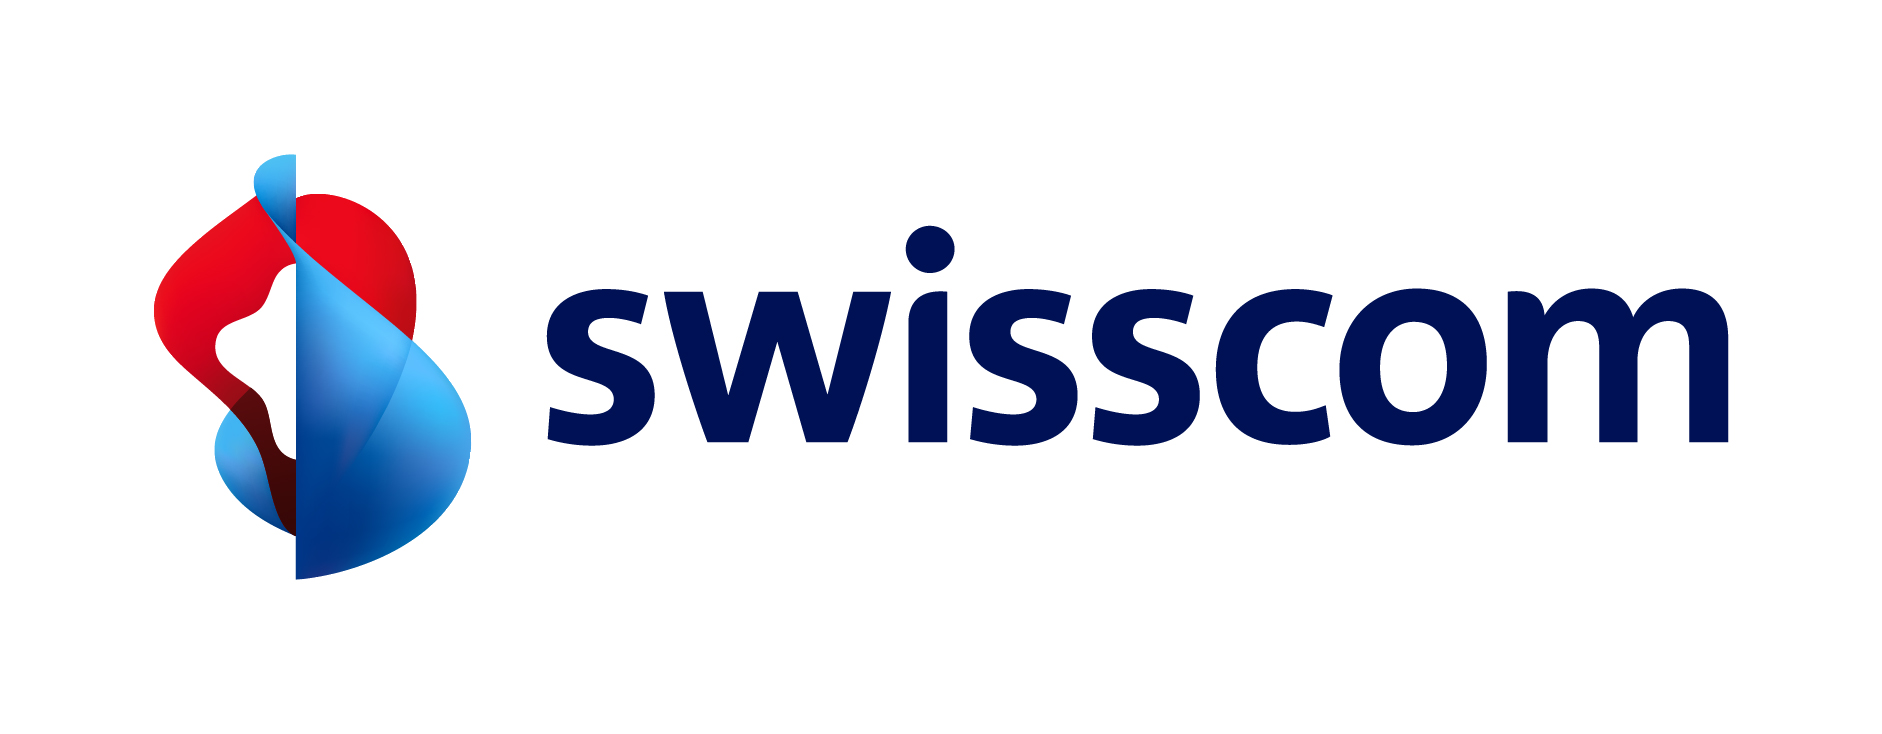 Swisscom Logos.jpg (161 KB)